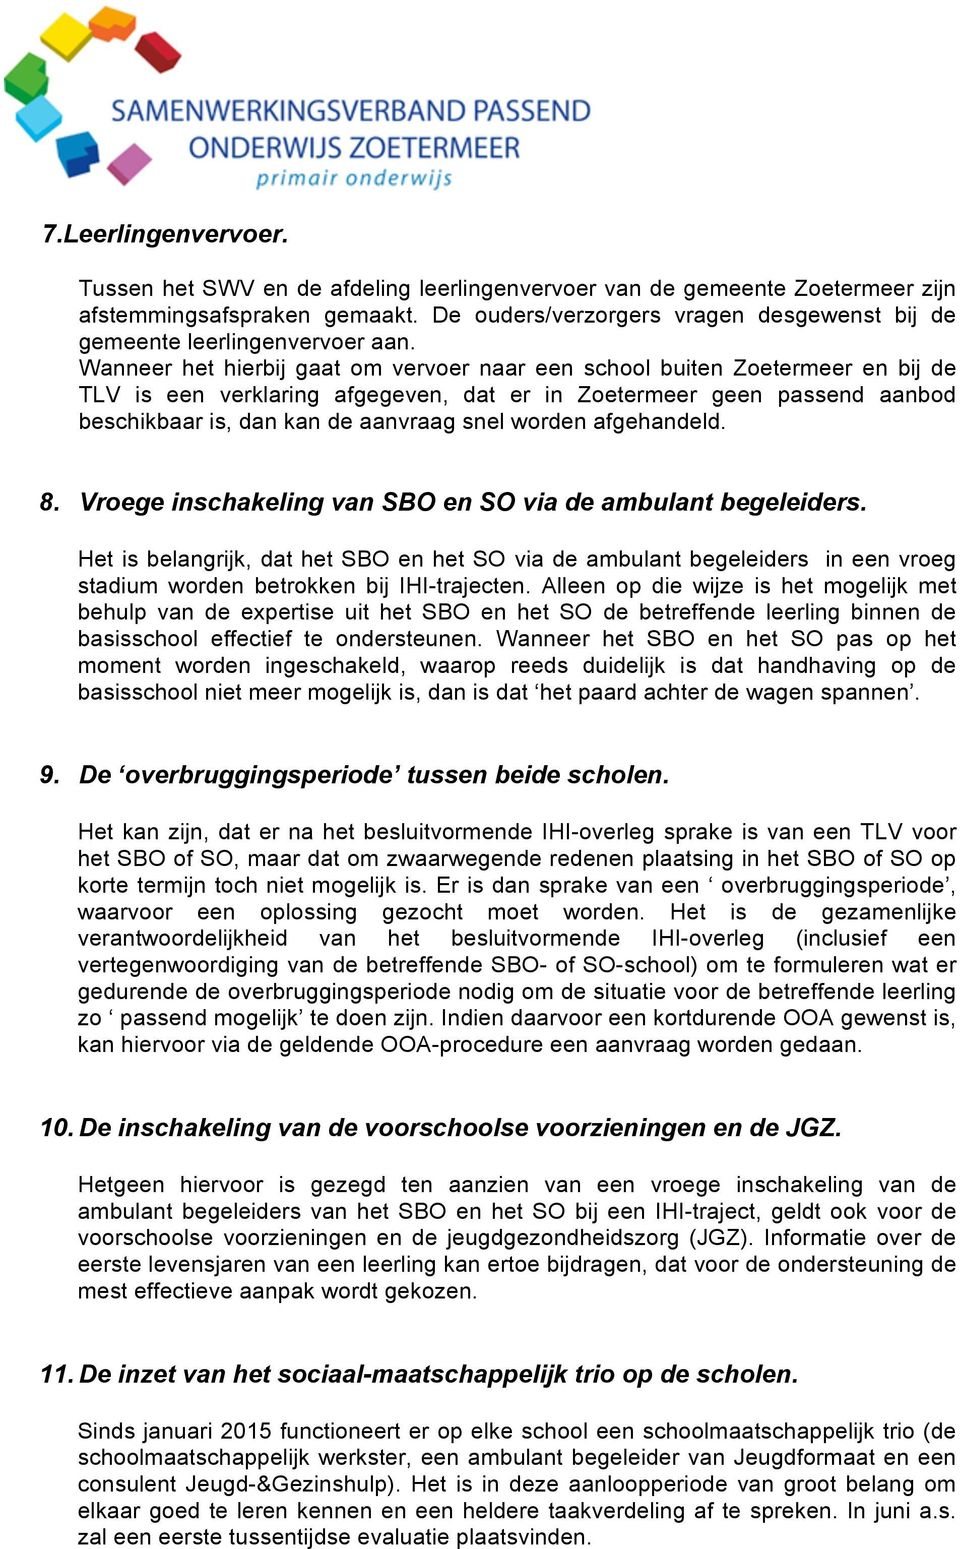 Wanneer het hierbij gaat om vervoer naar een school buiten Zoetermeer en bij de TLV is een verklaring afgegeven, dat er in Zoetermeer geen passend aanbod beschikbaar is, dan kan de aanvraag snel